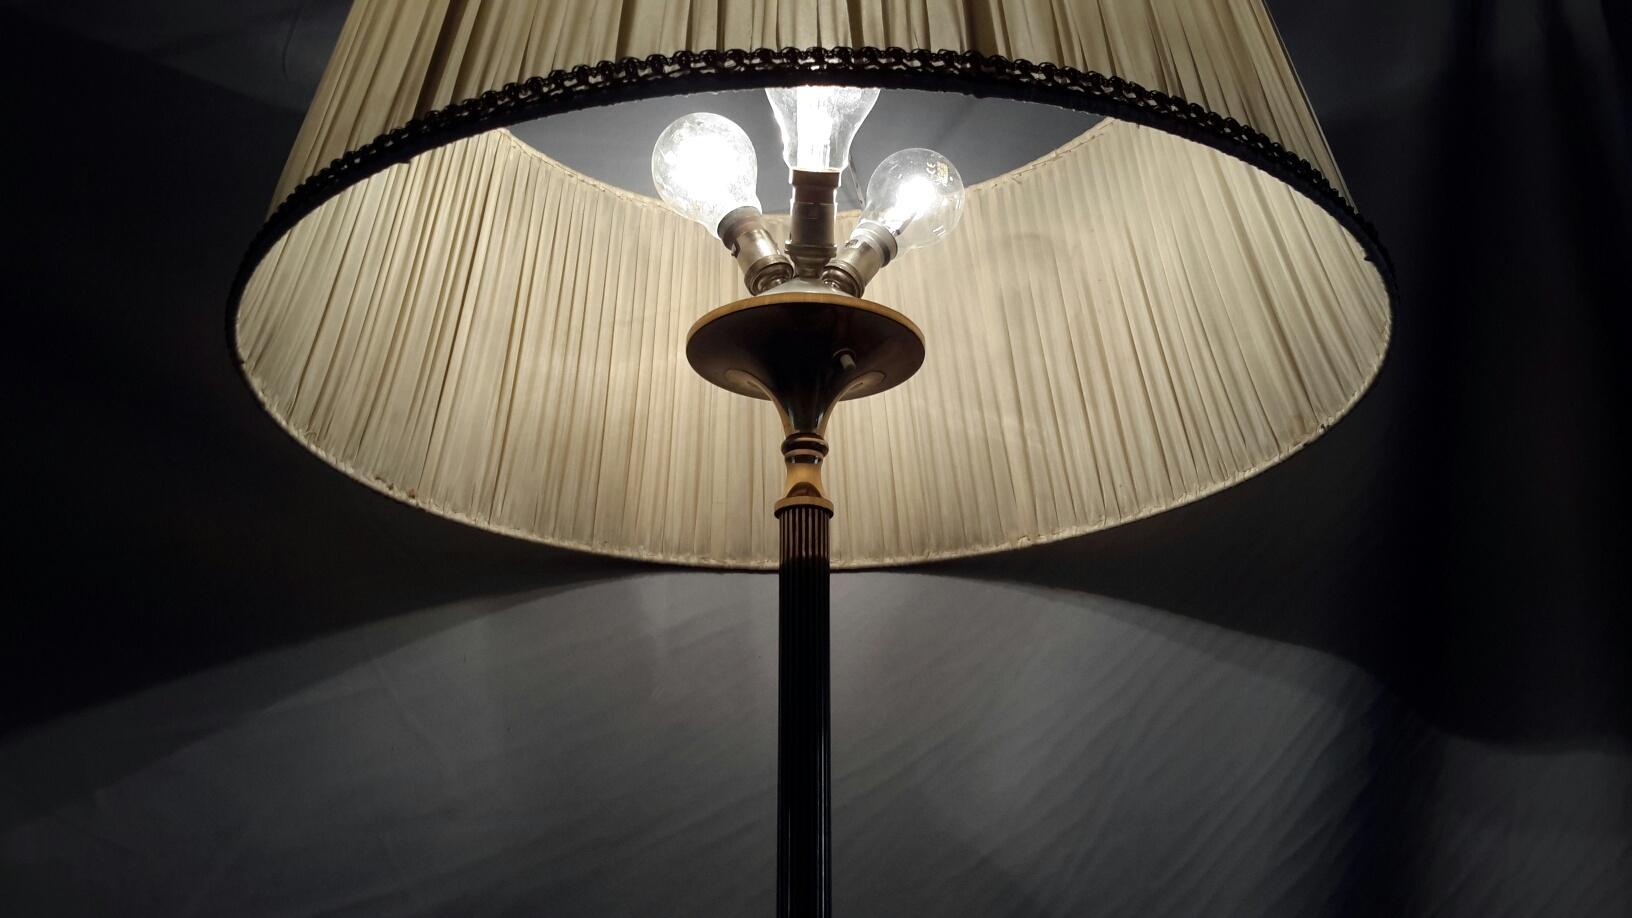 Très élégant lampadaire à trois lumières des années 1950 fabriqué par la Maison Arlus en bronze avec base tripode patinée noire et cannelure noire pour l'axe. Elle est munie d'un abat-jour en coton plissé.
La patine du plancher de la lampe est en